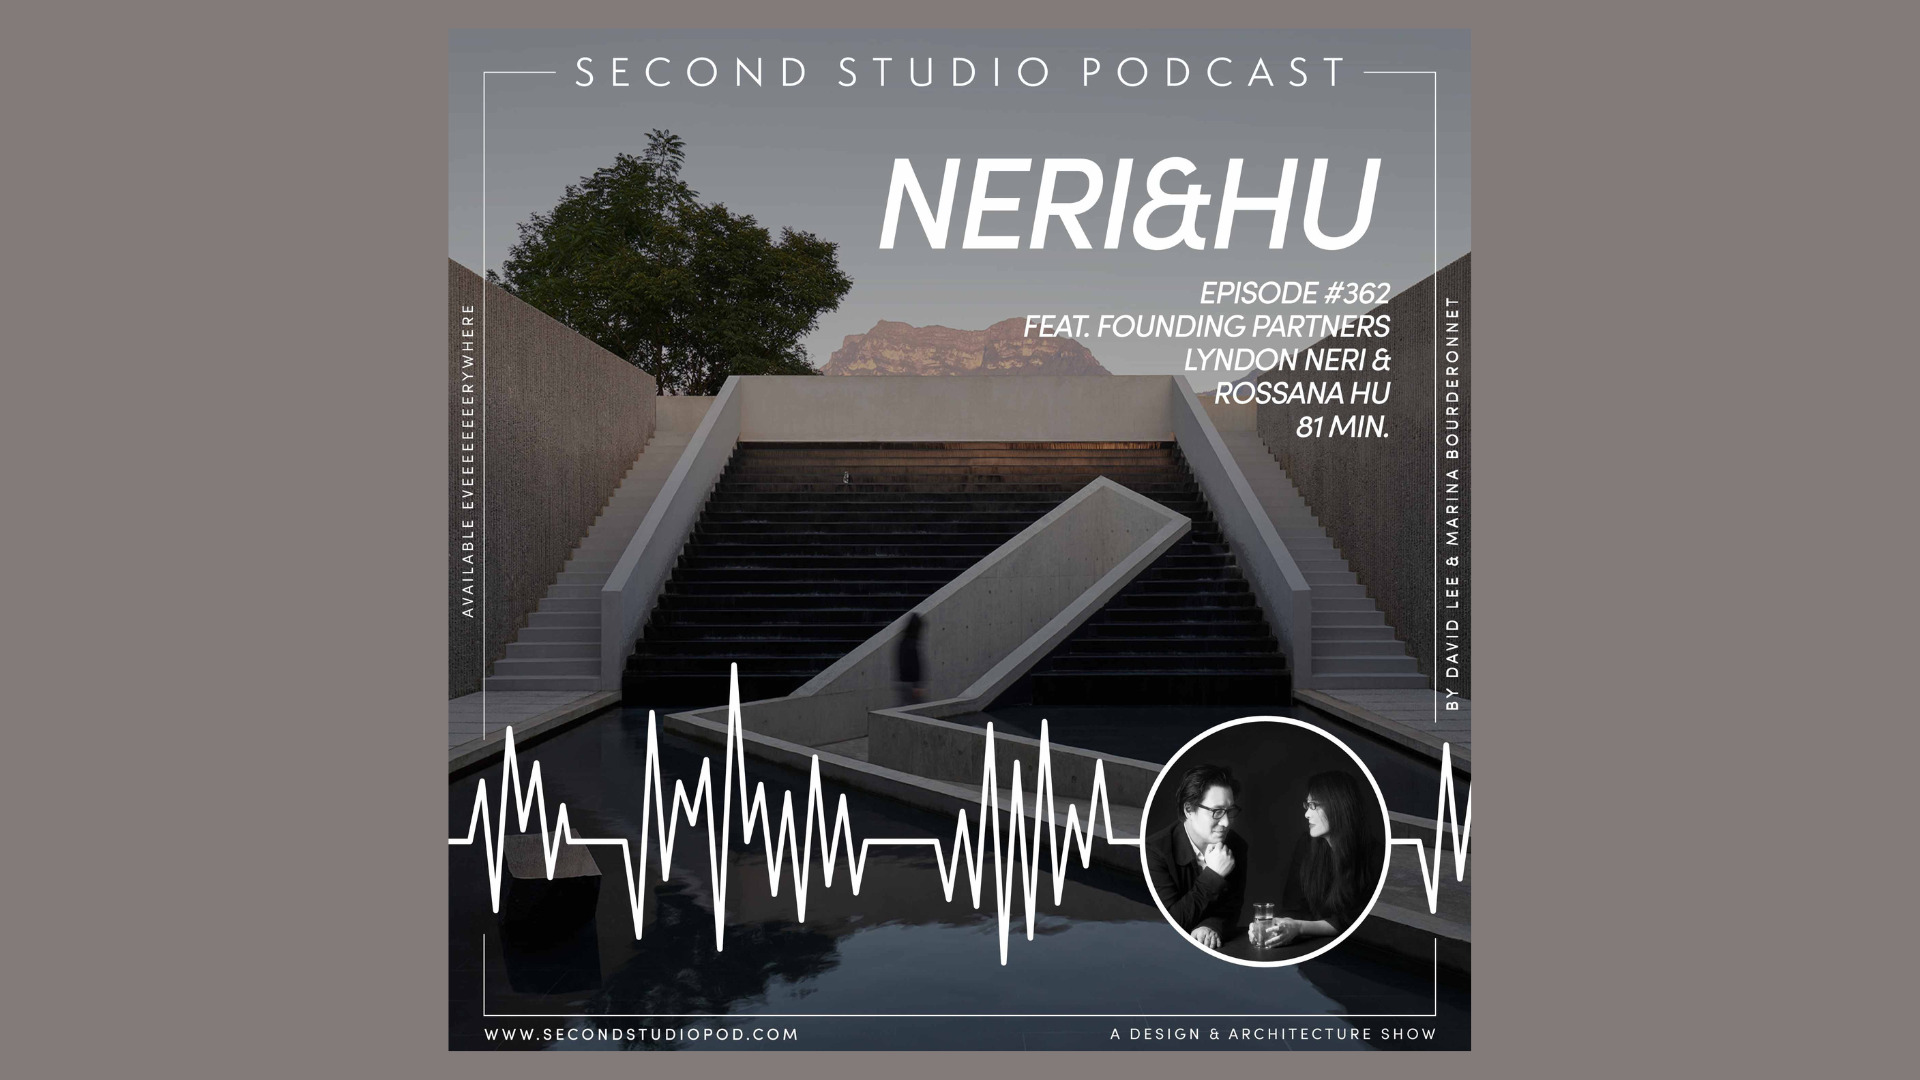 Второй студийный подкаст: интервью с Neri&Hu